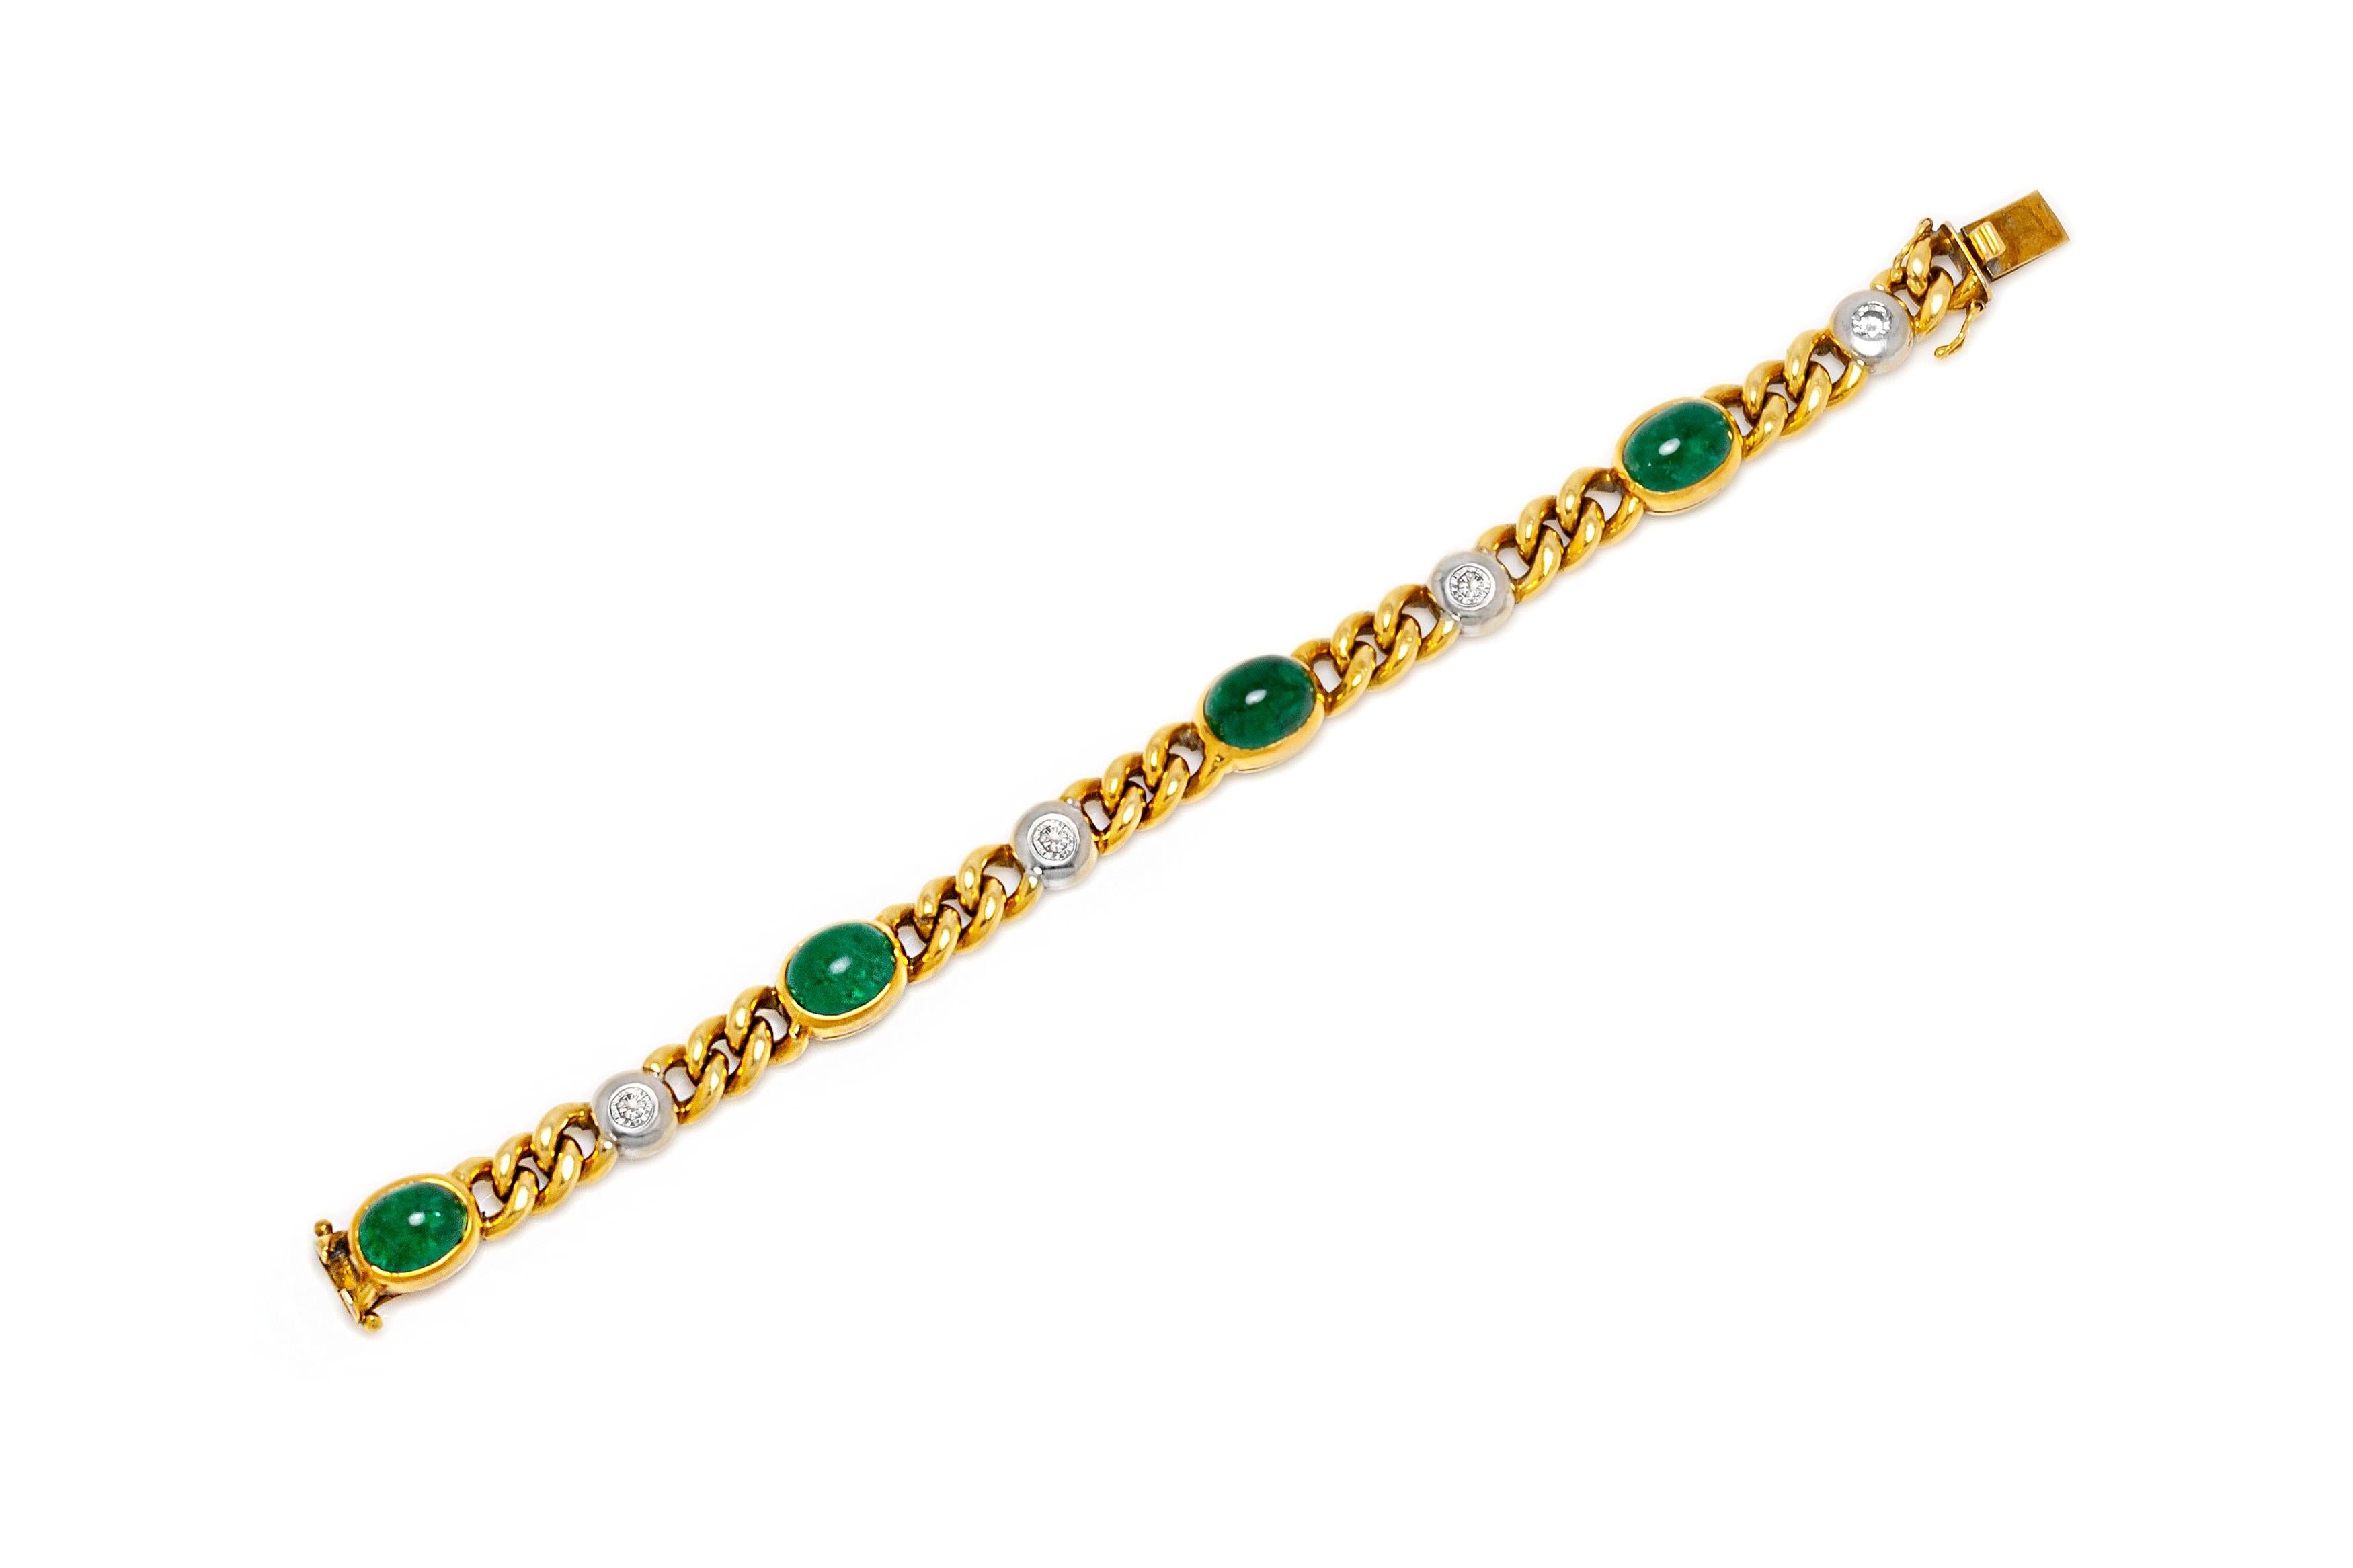 Armband aus 18 Karat Gelbgold mit Smaragden mit einem Gesamtgewicht von 15,80 Karat und Diamanten mit einem Gesamtgewicht von 1,00 Karat. Die Länge des Armbands beträgt 7 Zoll/18,5 cm. Um 1960.